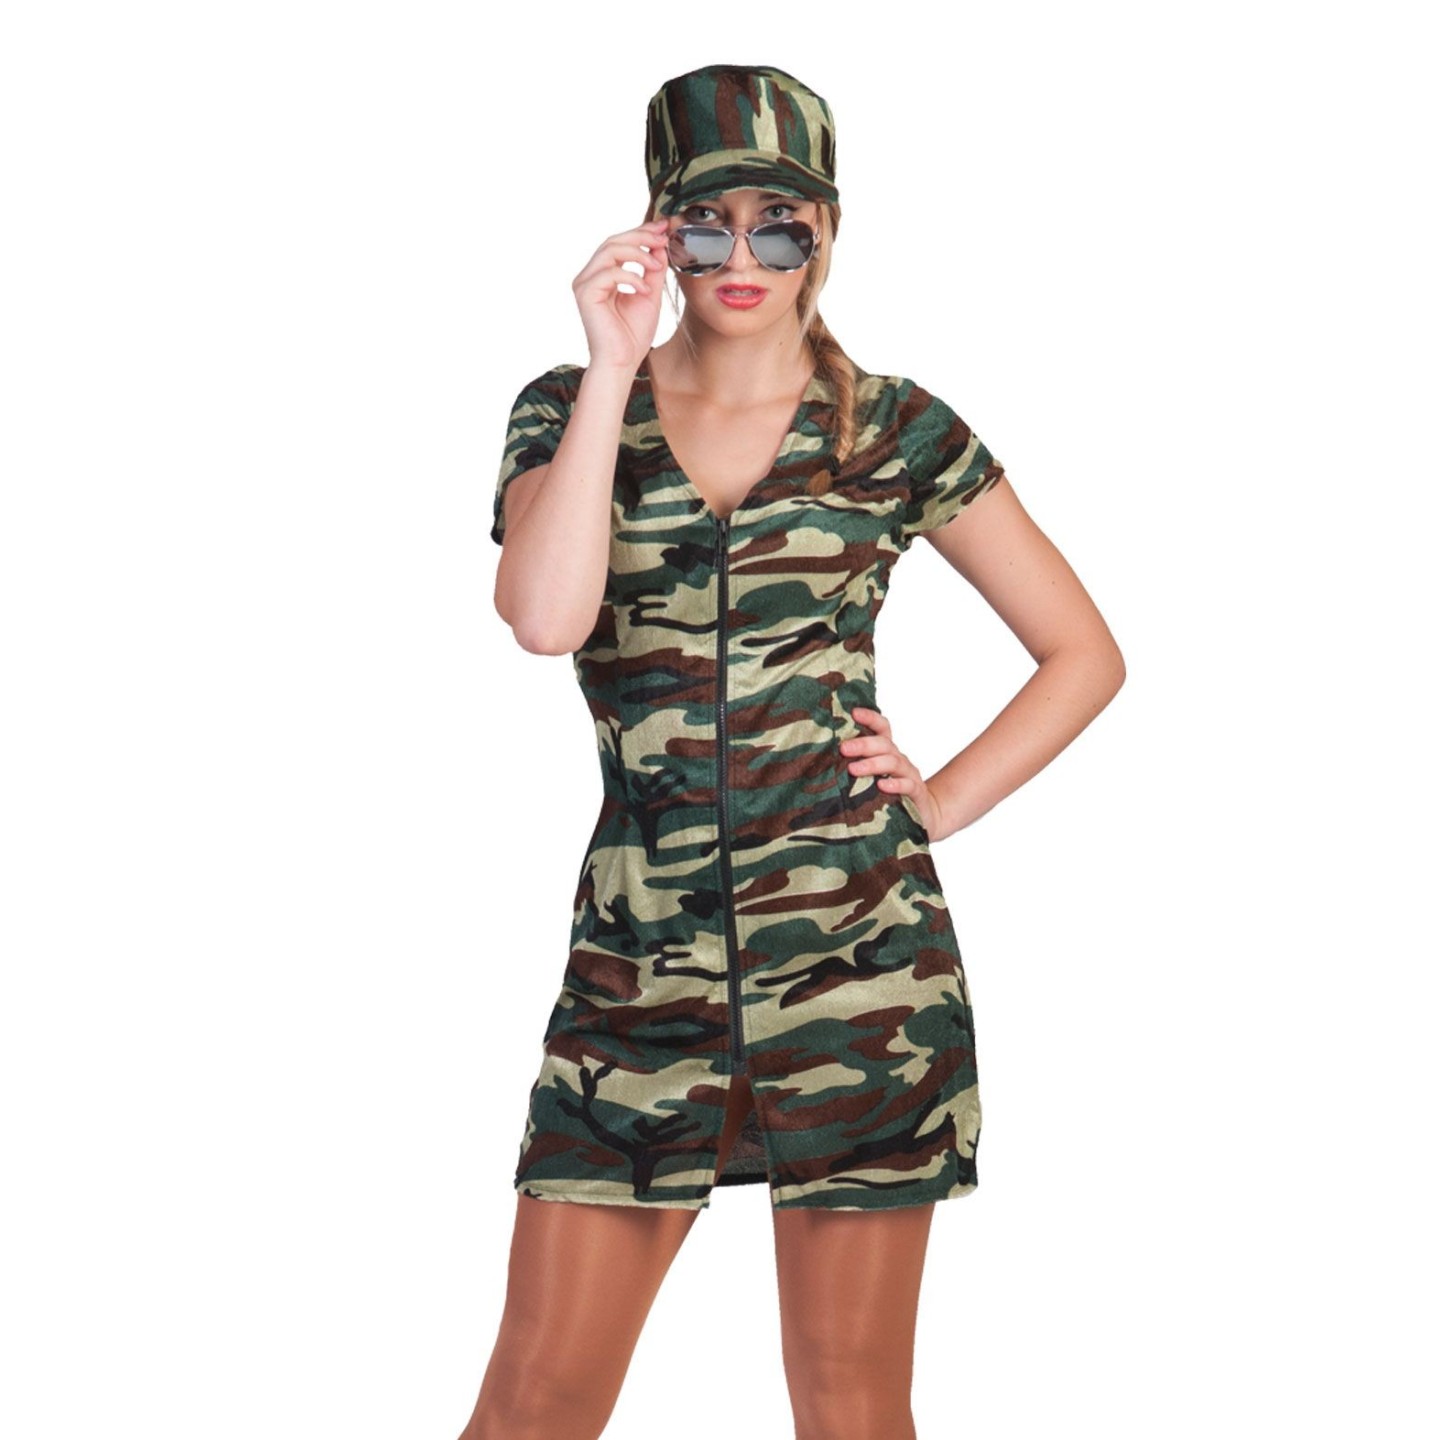 Bezwaar surfen Reorganiseren Leger jurkje camouflage dames| Jokershop.be - Carnavalswinkel